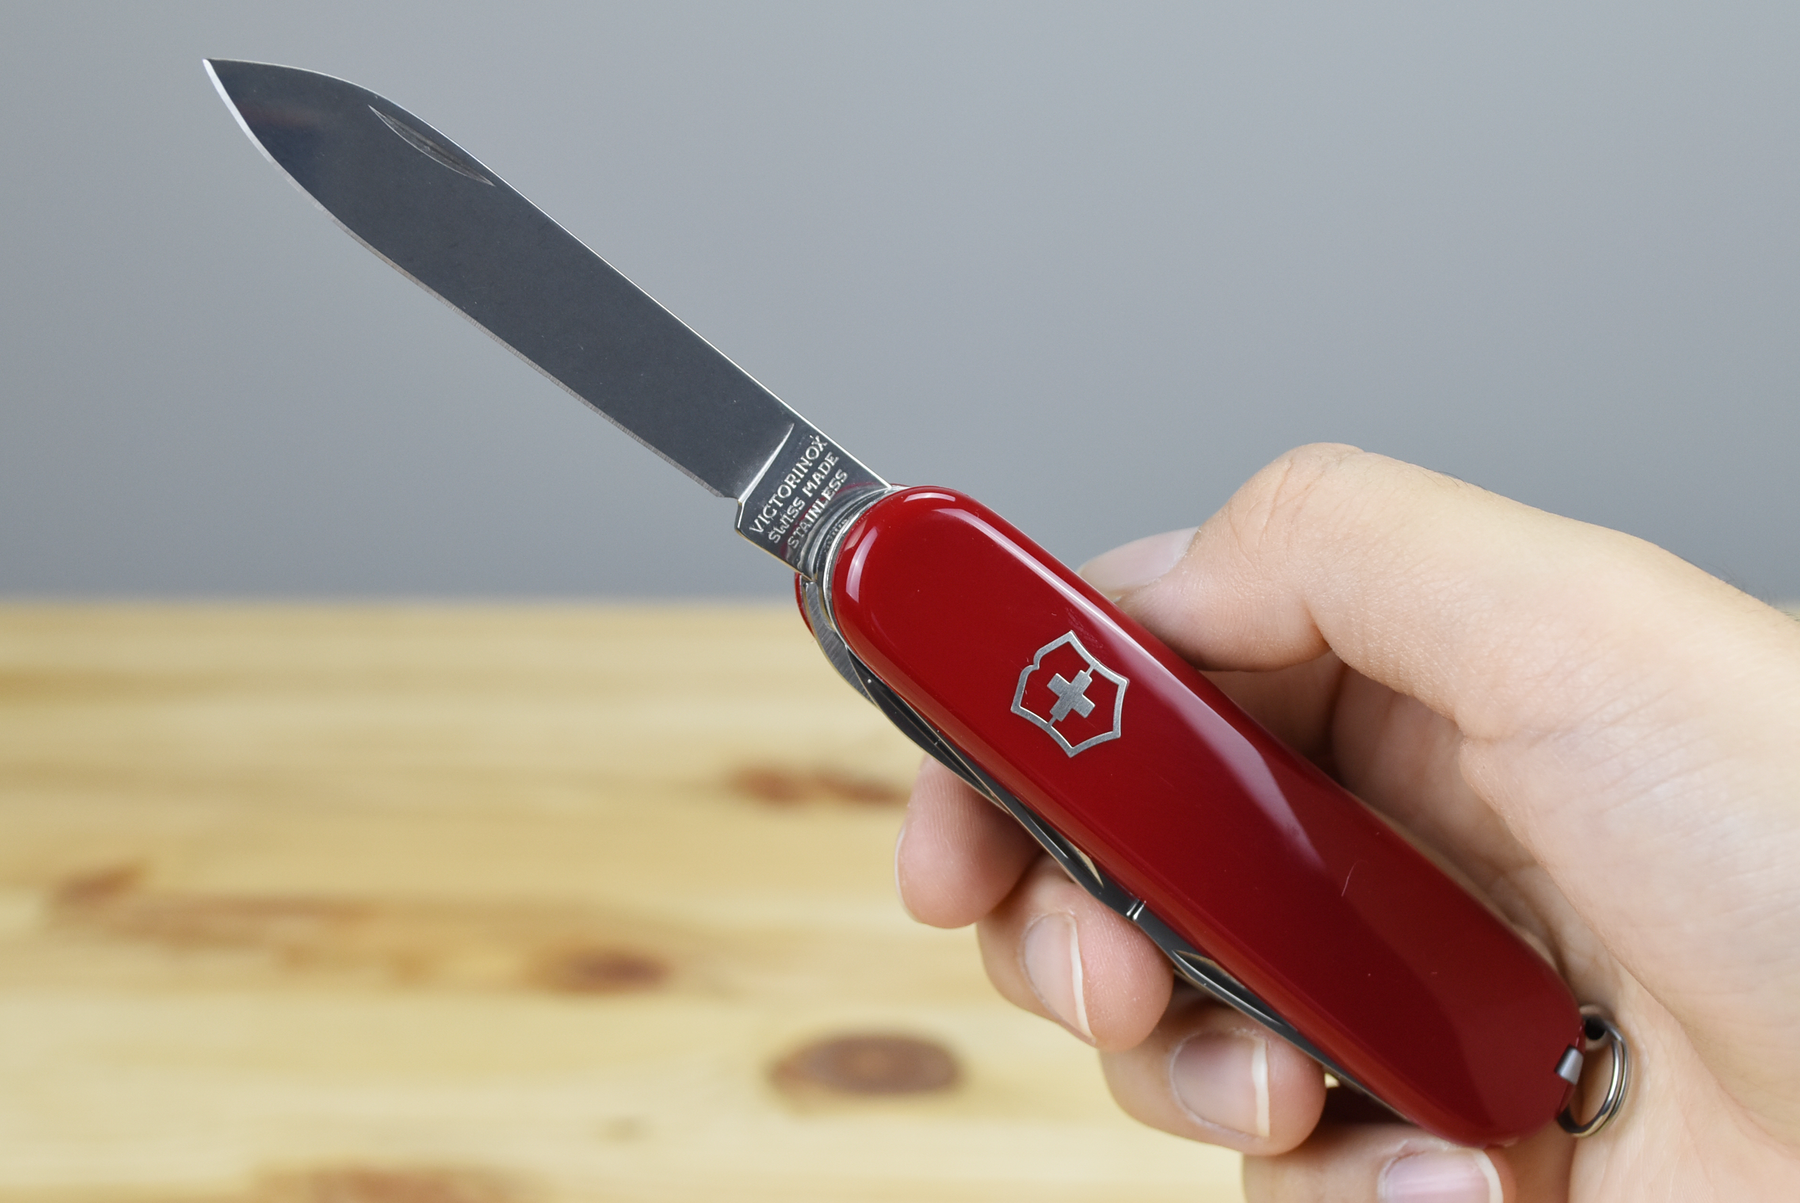 Victorinox Fieldmaster Multitool Pocket Knife 1.4713 (Red)